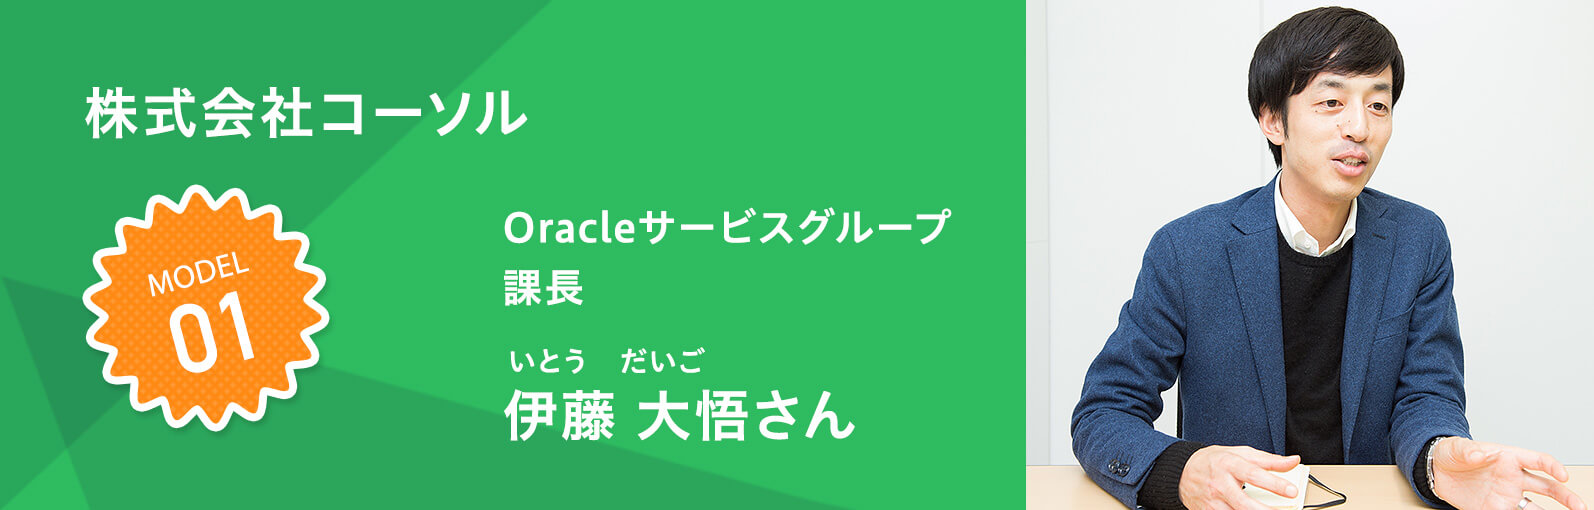 株式会社コーソル Oracleサービスグループ 課長 伊藤大悟（いとう だいご）